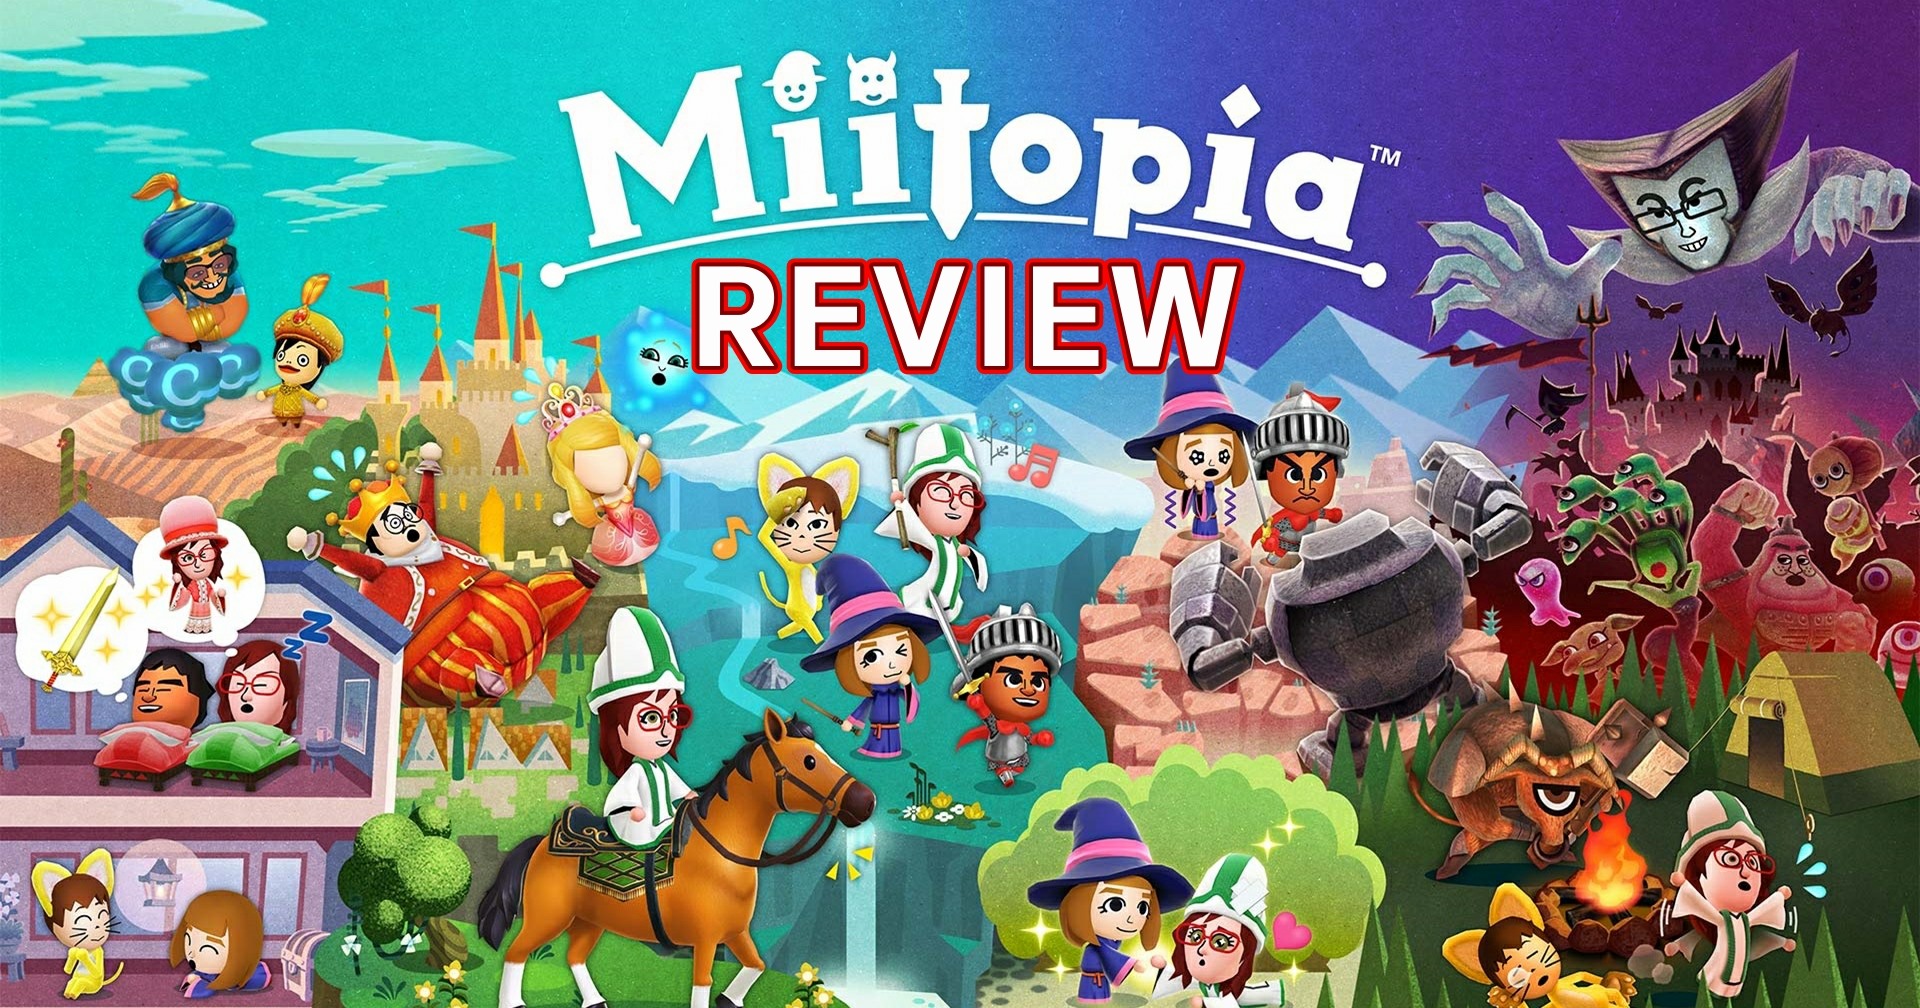 รีวิวเกม Miitopia (Nintendo Switch) เกม RPG ที่สร้างเพื่อนเป็นบอสใหญ่ในเกมได้